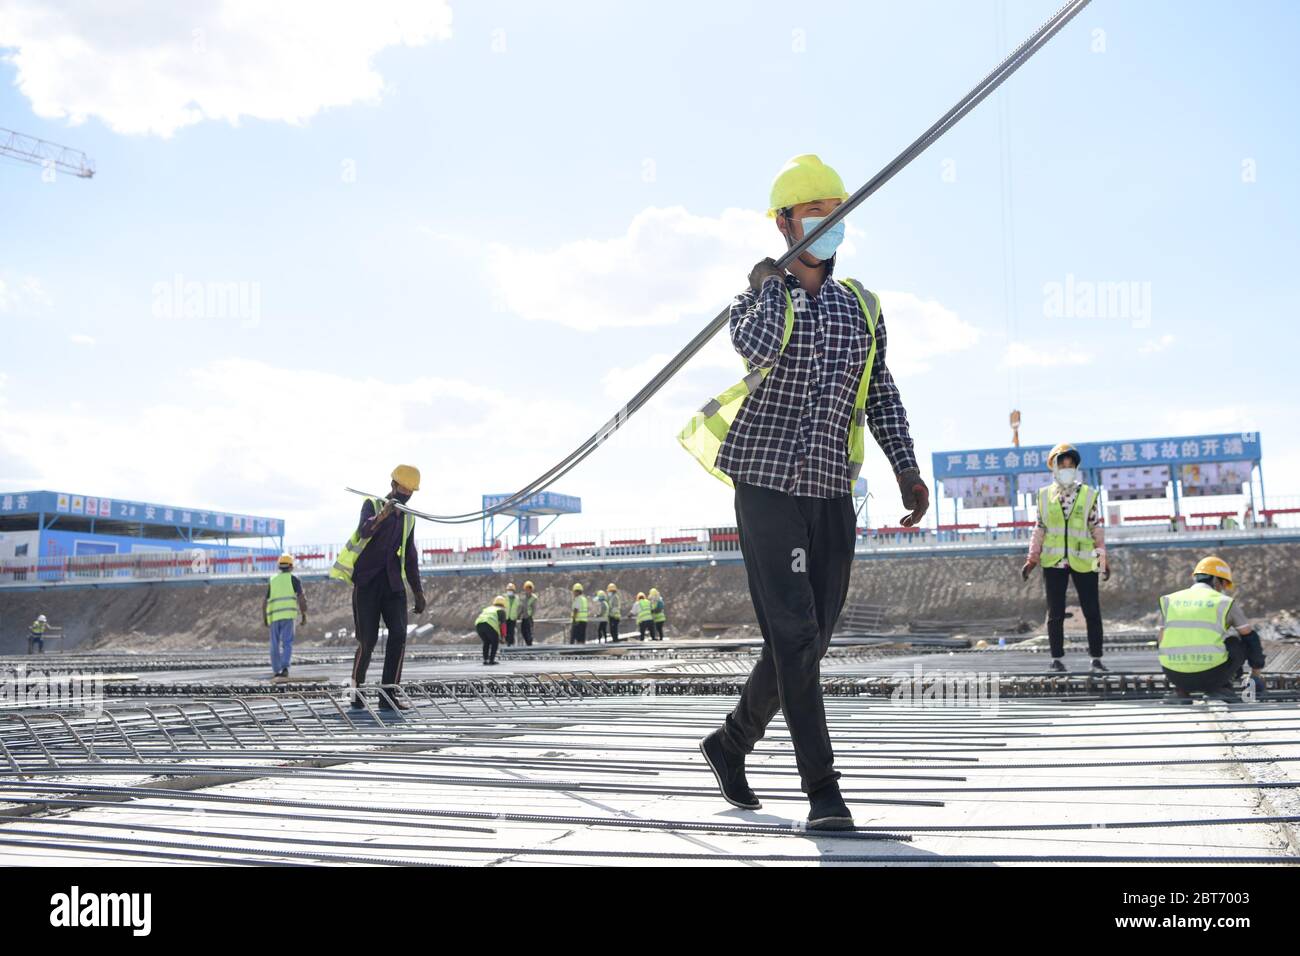 Urumqi, la regione autonoma cinese di Xinjiang Uygur. 23 maggio 2020. I lavoratori spostano le barre di rinforzo nel cantiere per il progetto di espansione dell'aeroporto internazionale di Urumqi Diwopu a Urumqi, regione autonoma Xinjiang Uygur, nella Cina nord-occidentale, 23 maggio 2020. Il progetto comprende un nuovo terminal di 500,000 metri quadrati, due piste di oltre 3,000 metri, un centro di trasporto integrato fino a 92,700 metri quadrati, un parcheggio di oltre 250,000 metri quadri e attrezzature ausiliarie. Il progetto dovrebbe essere completato entro il 2023. Credit: Ding Lei/Xinhua/Alamy Live News Foto Stock